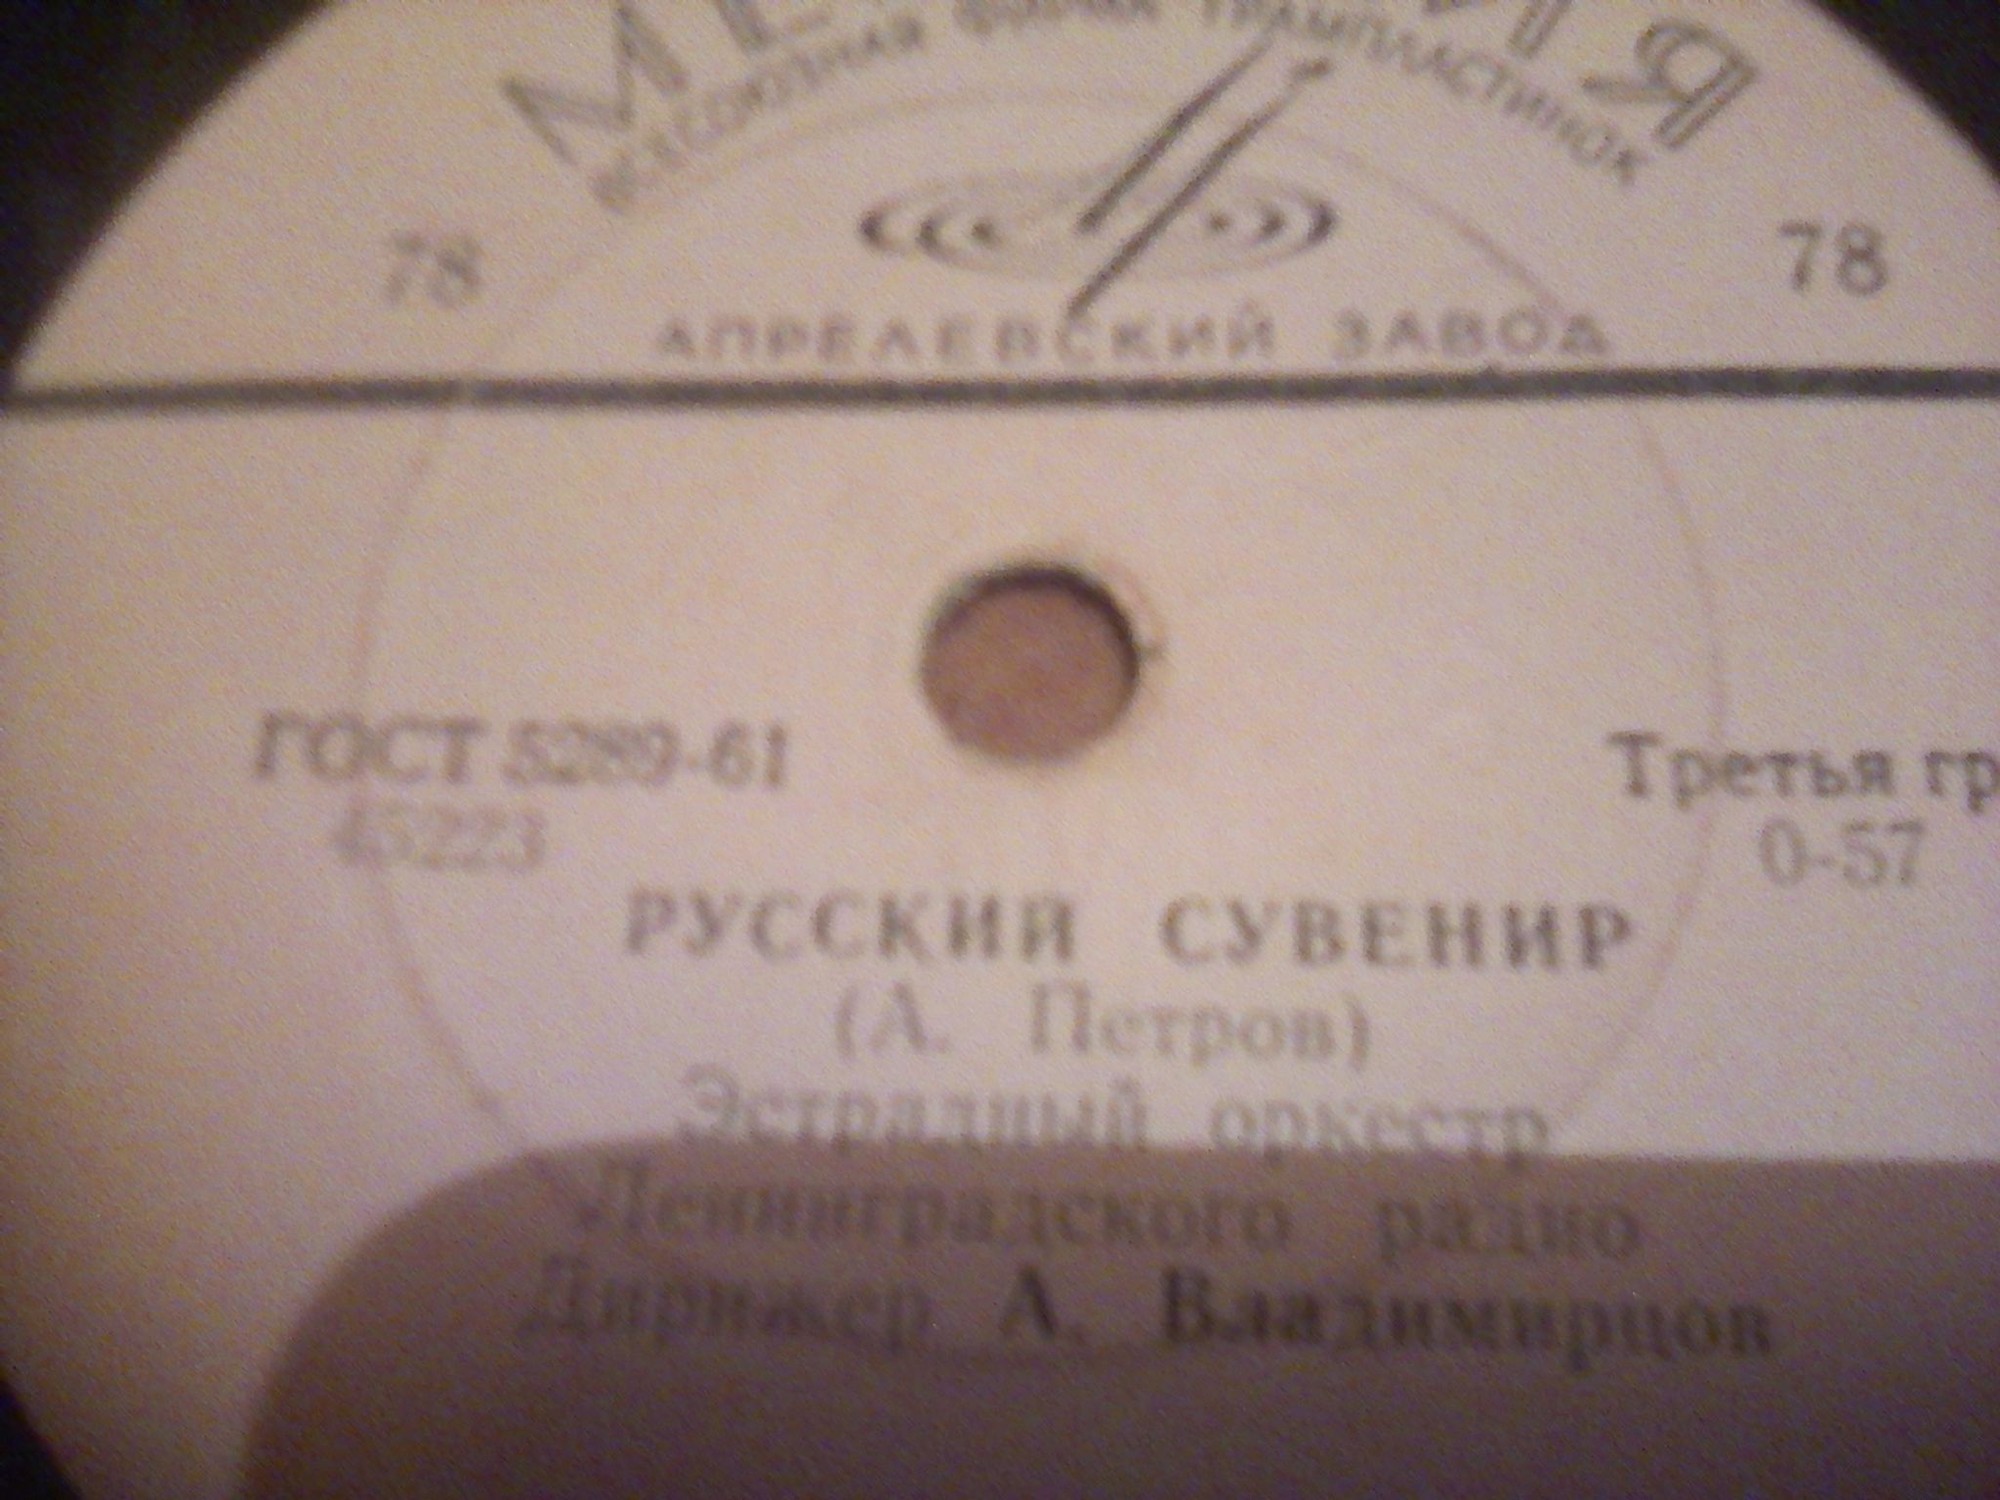 Эстрадный оркестр Ленинградского радио, дирижер А. Владимирцов